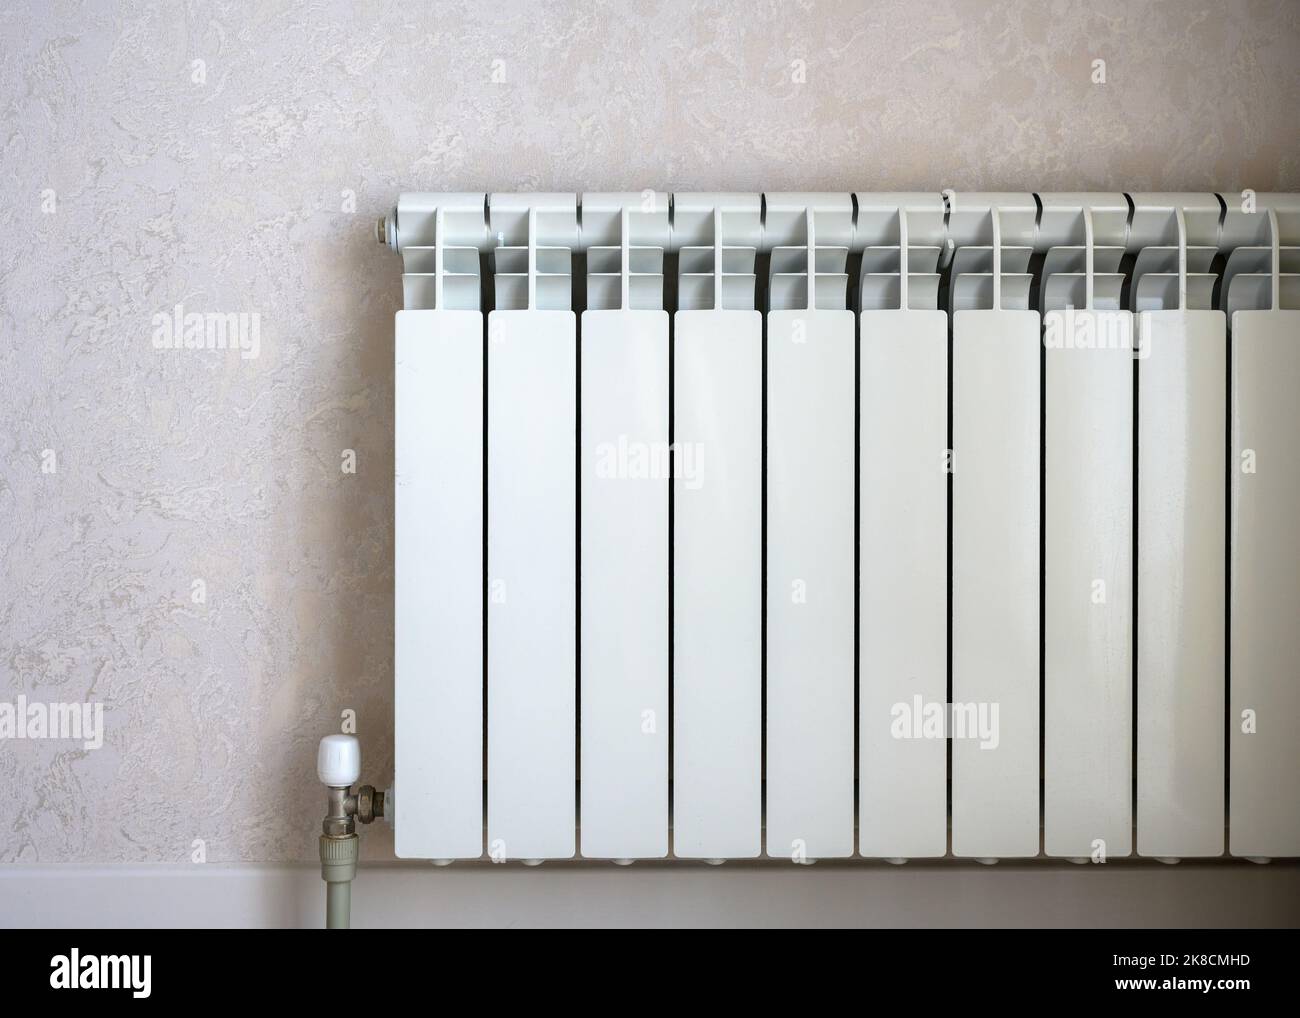 Heizkörper auf hellem Wandhintergrund, weißer Metall-Wasserkocher im Wohnzimmer. Konzept von Wärme, Energiekrise, Einsparung, moderne Heizkörper. Stockfoto